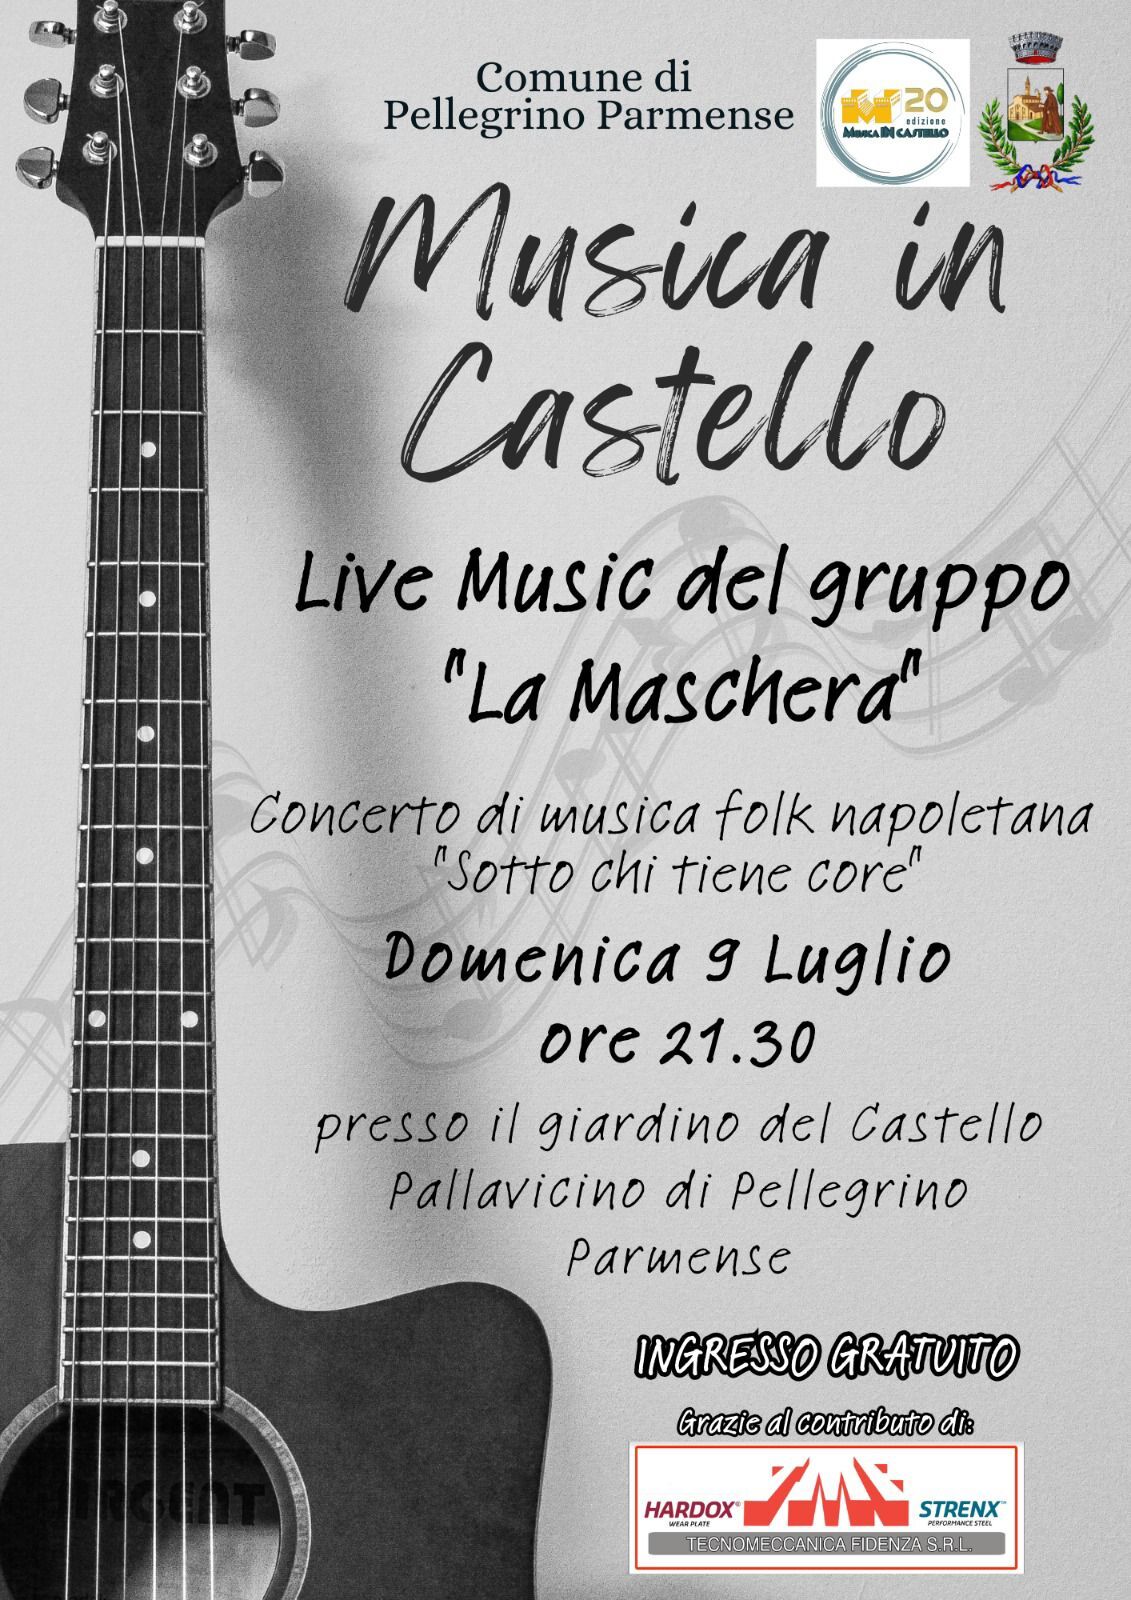 A Musica  in castello live music del gruppo "La maschera" a Pellegrino Parmense